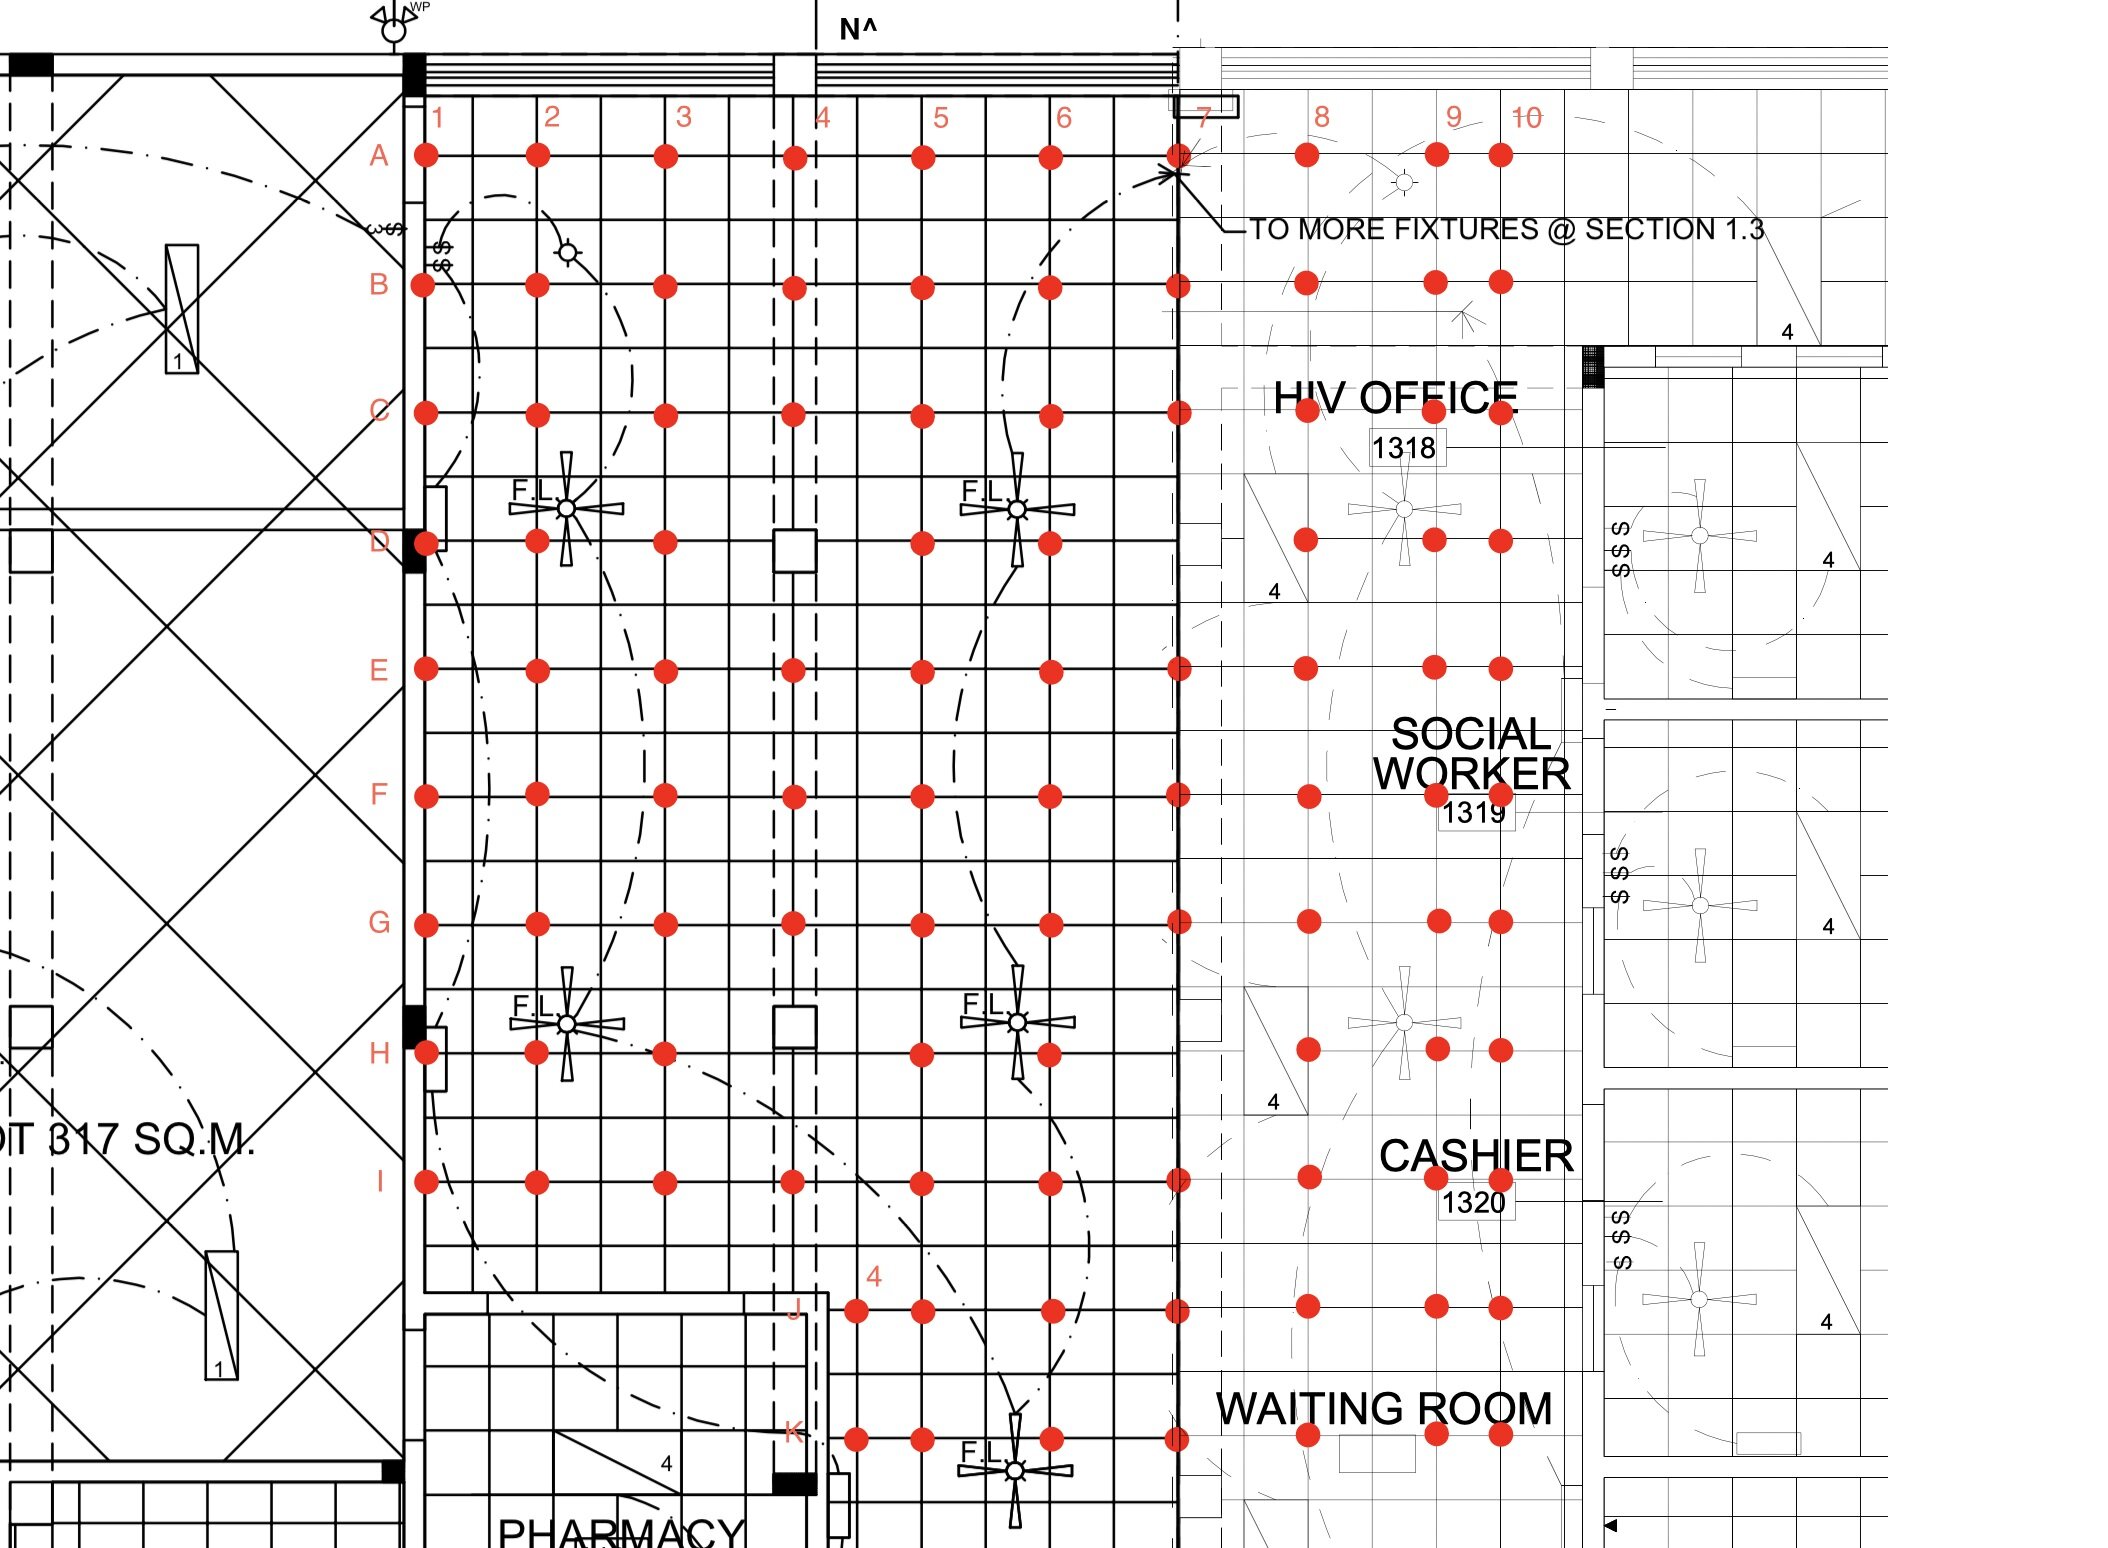 Floor plan for measuring data points